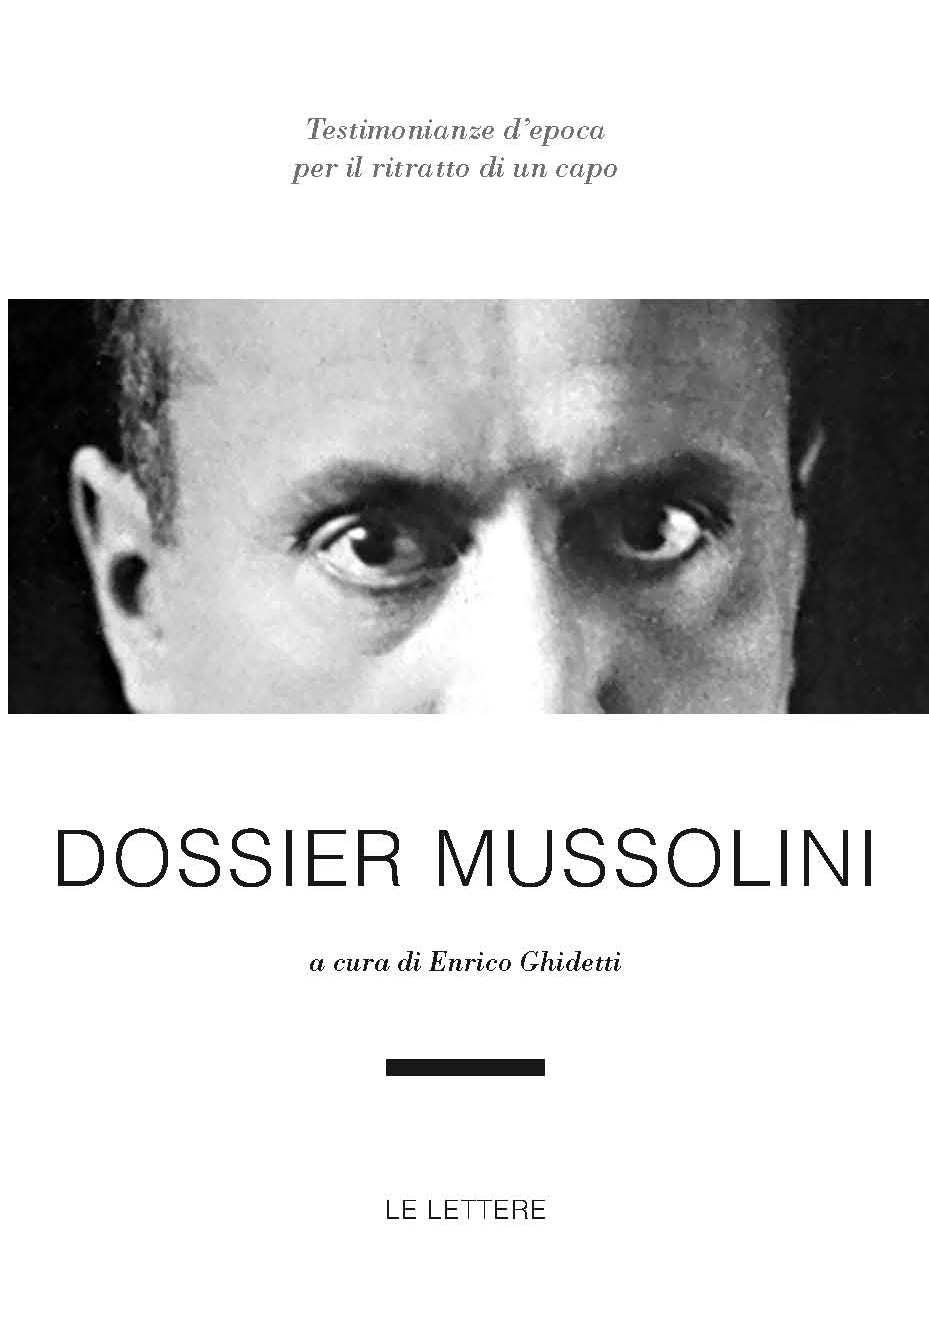 Dossier Mussolini